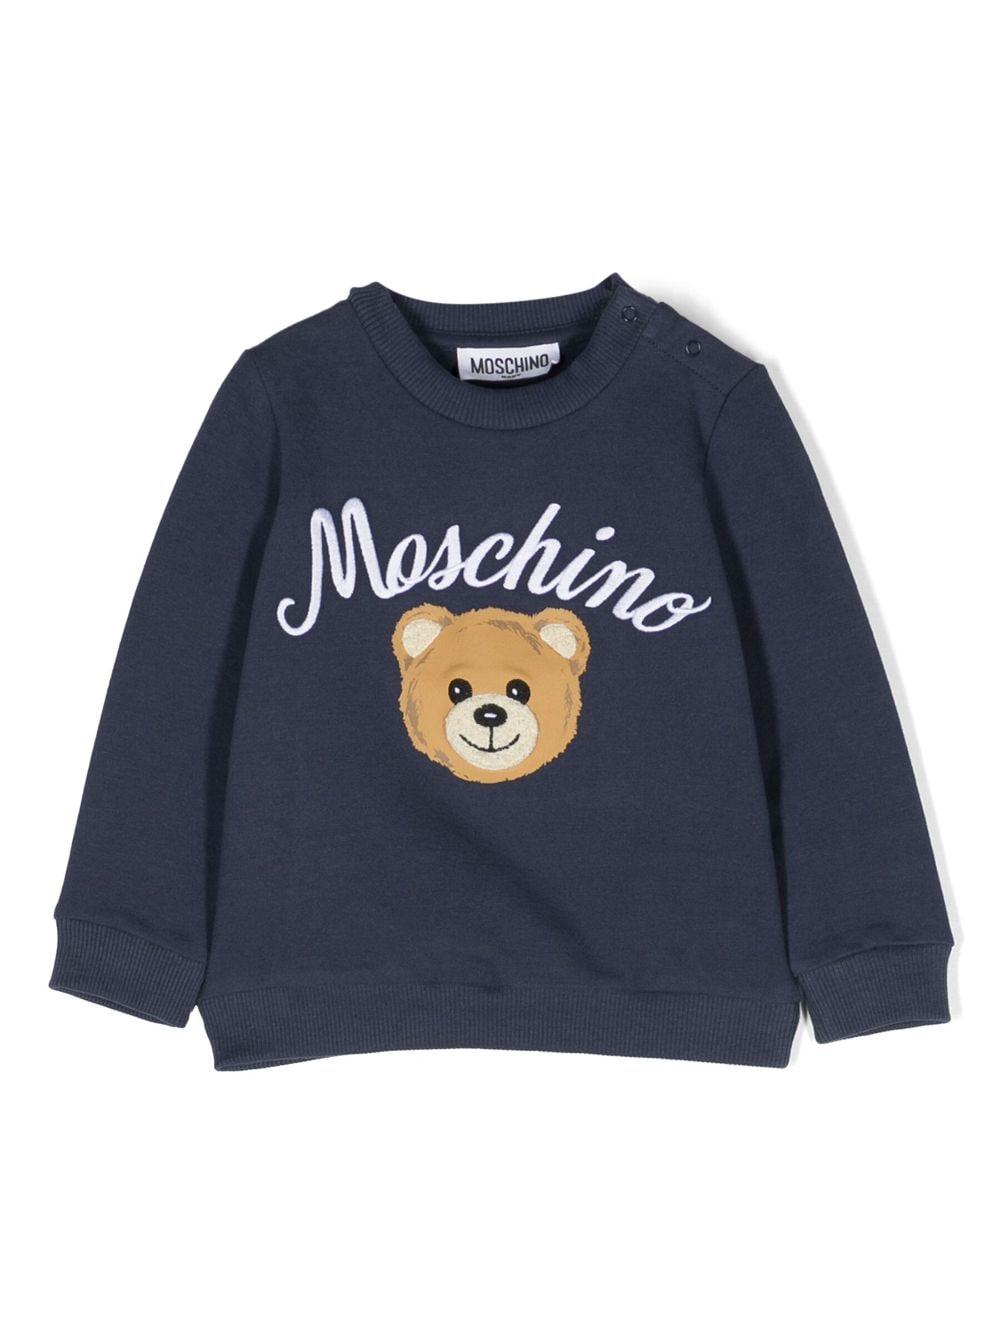 Moschino Kids sweatshirt with print